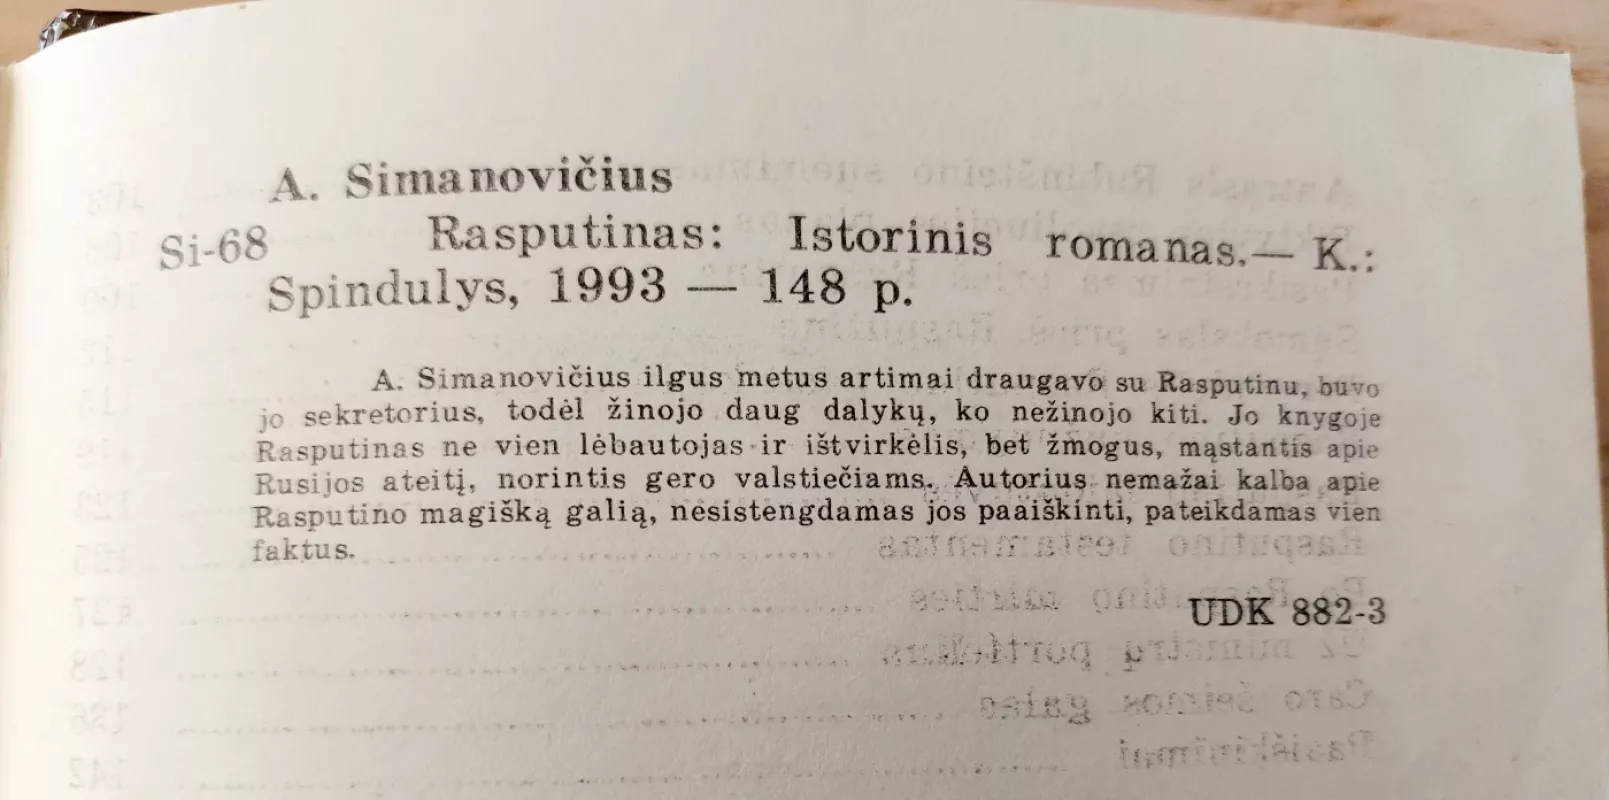 Rasputinas - A. Simanovičius, knyga 5